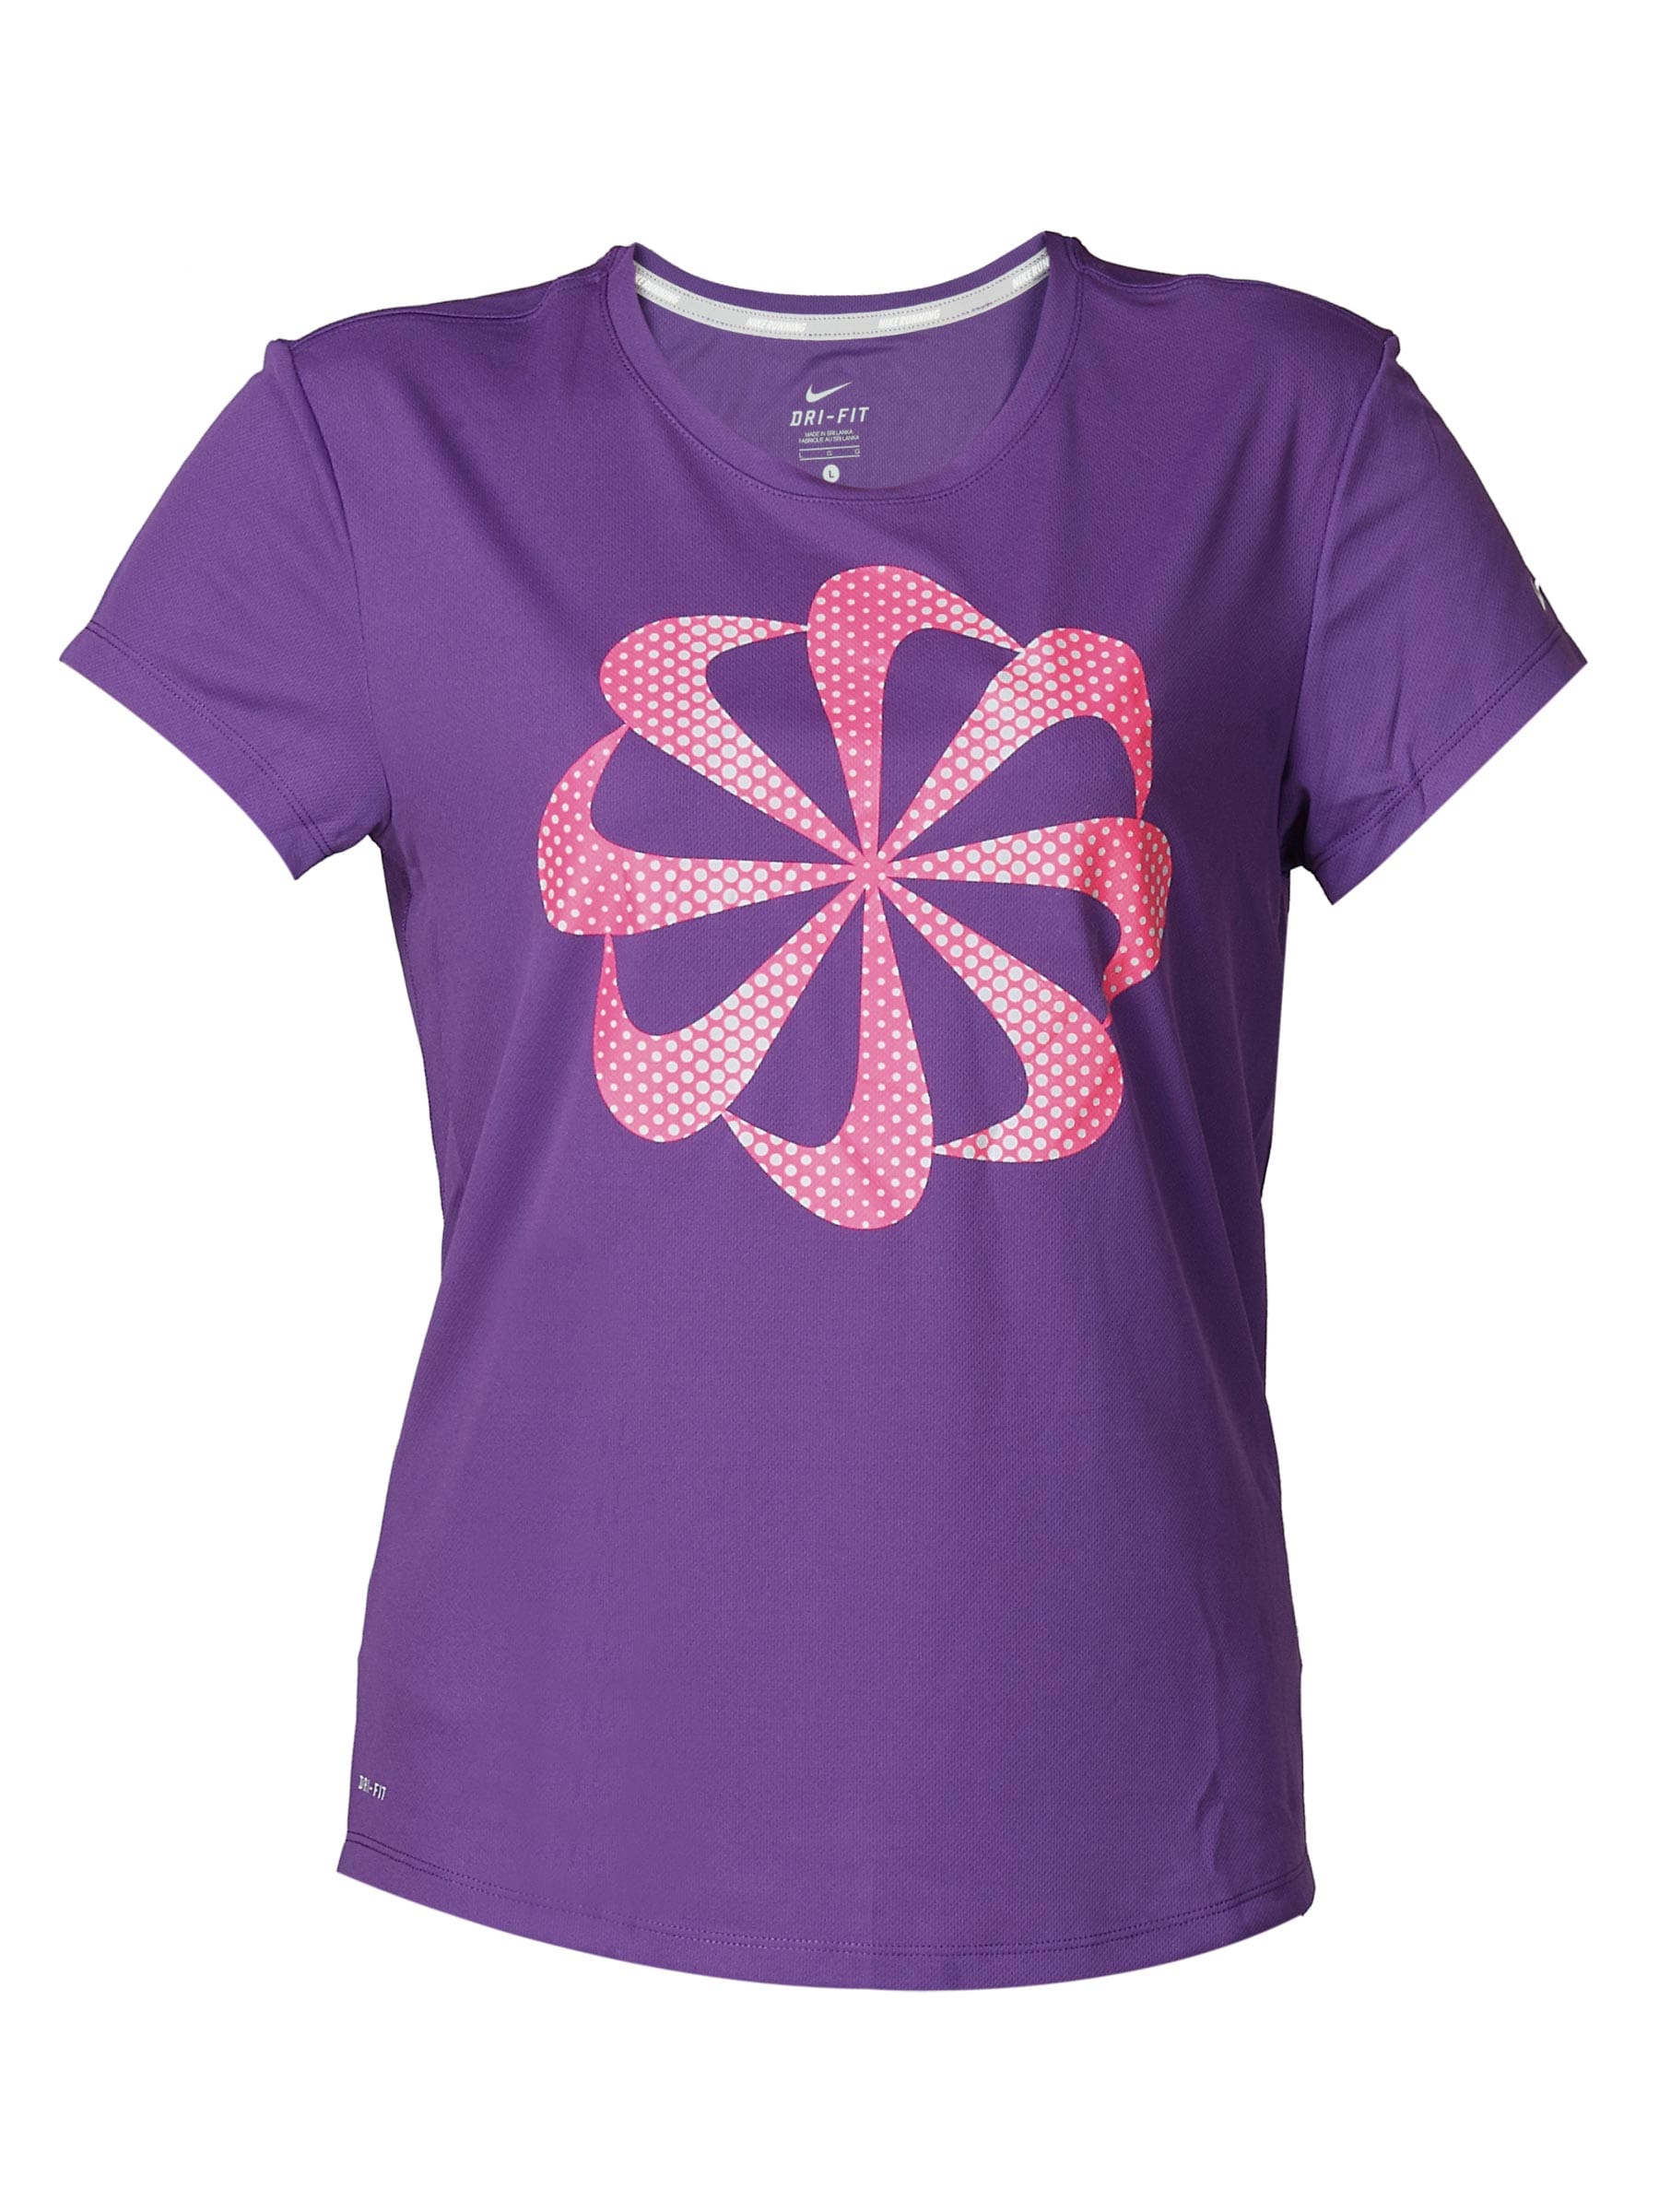 Nike Women's Challen Purple T-shirt